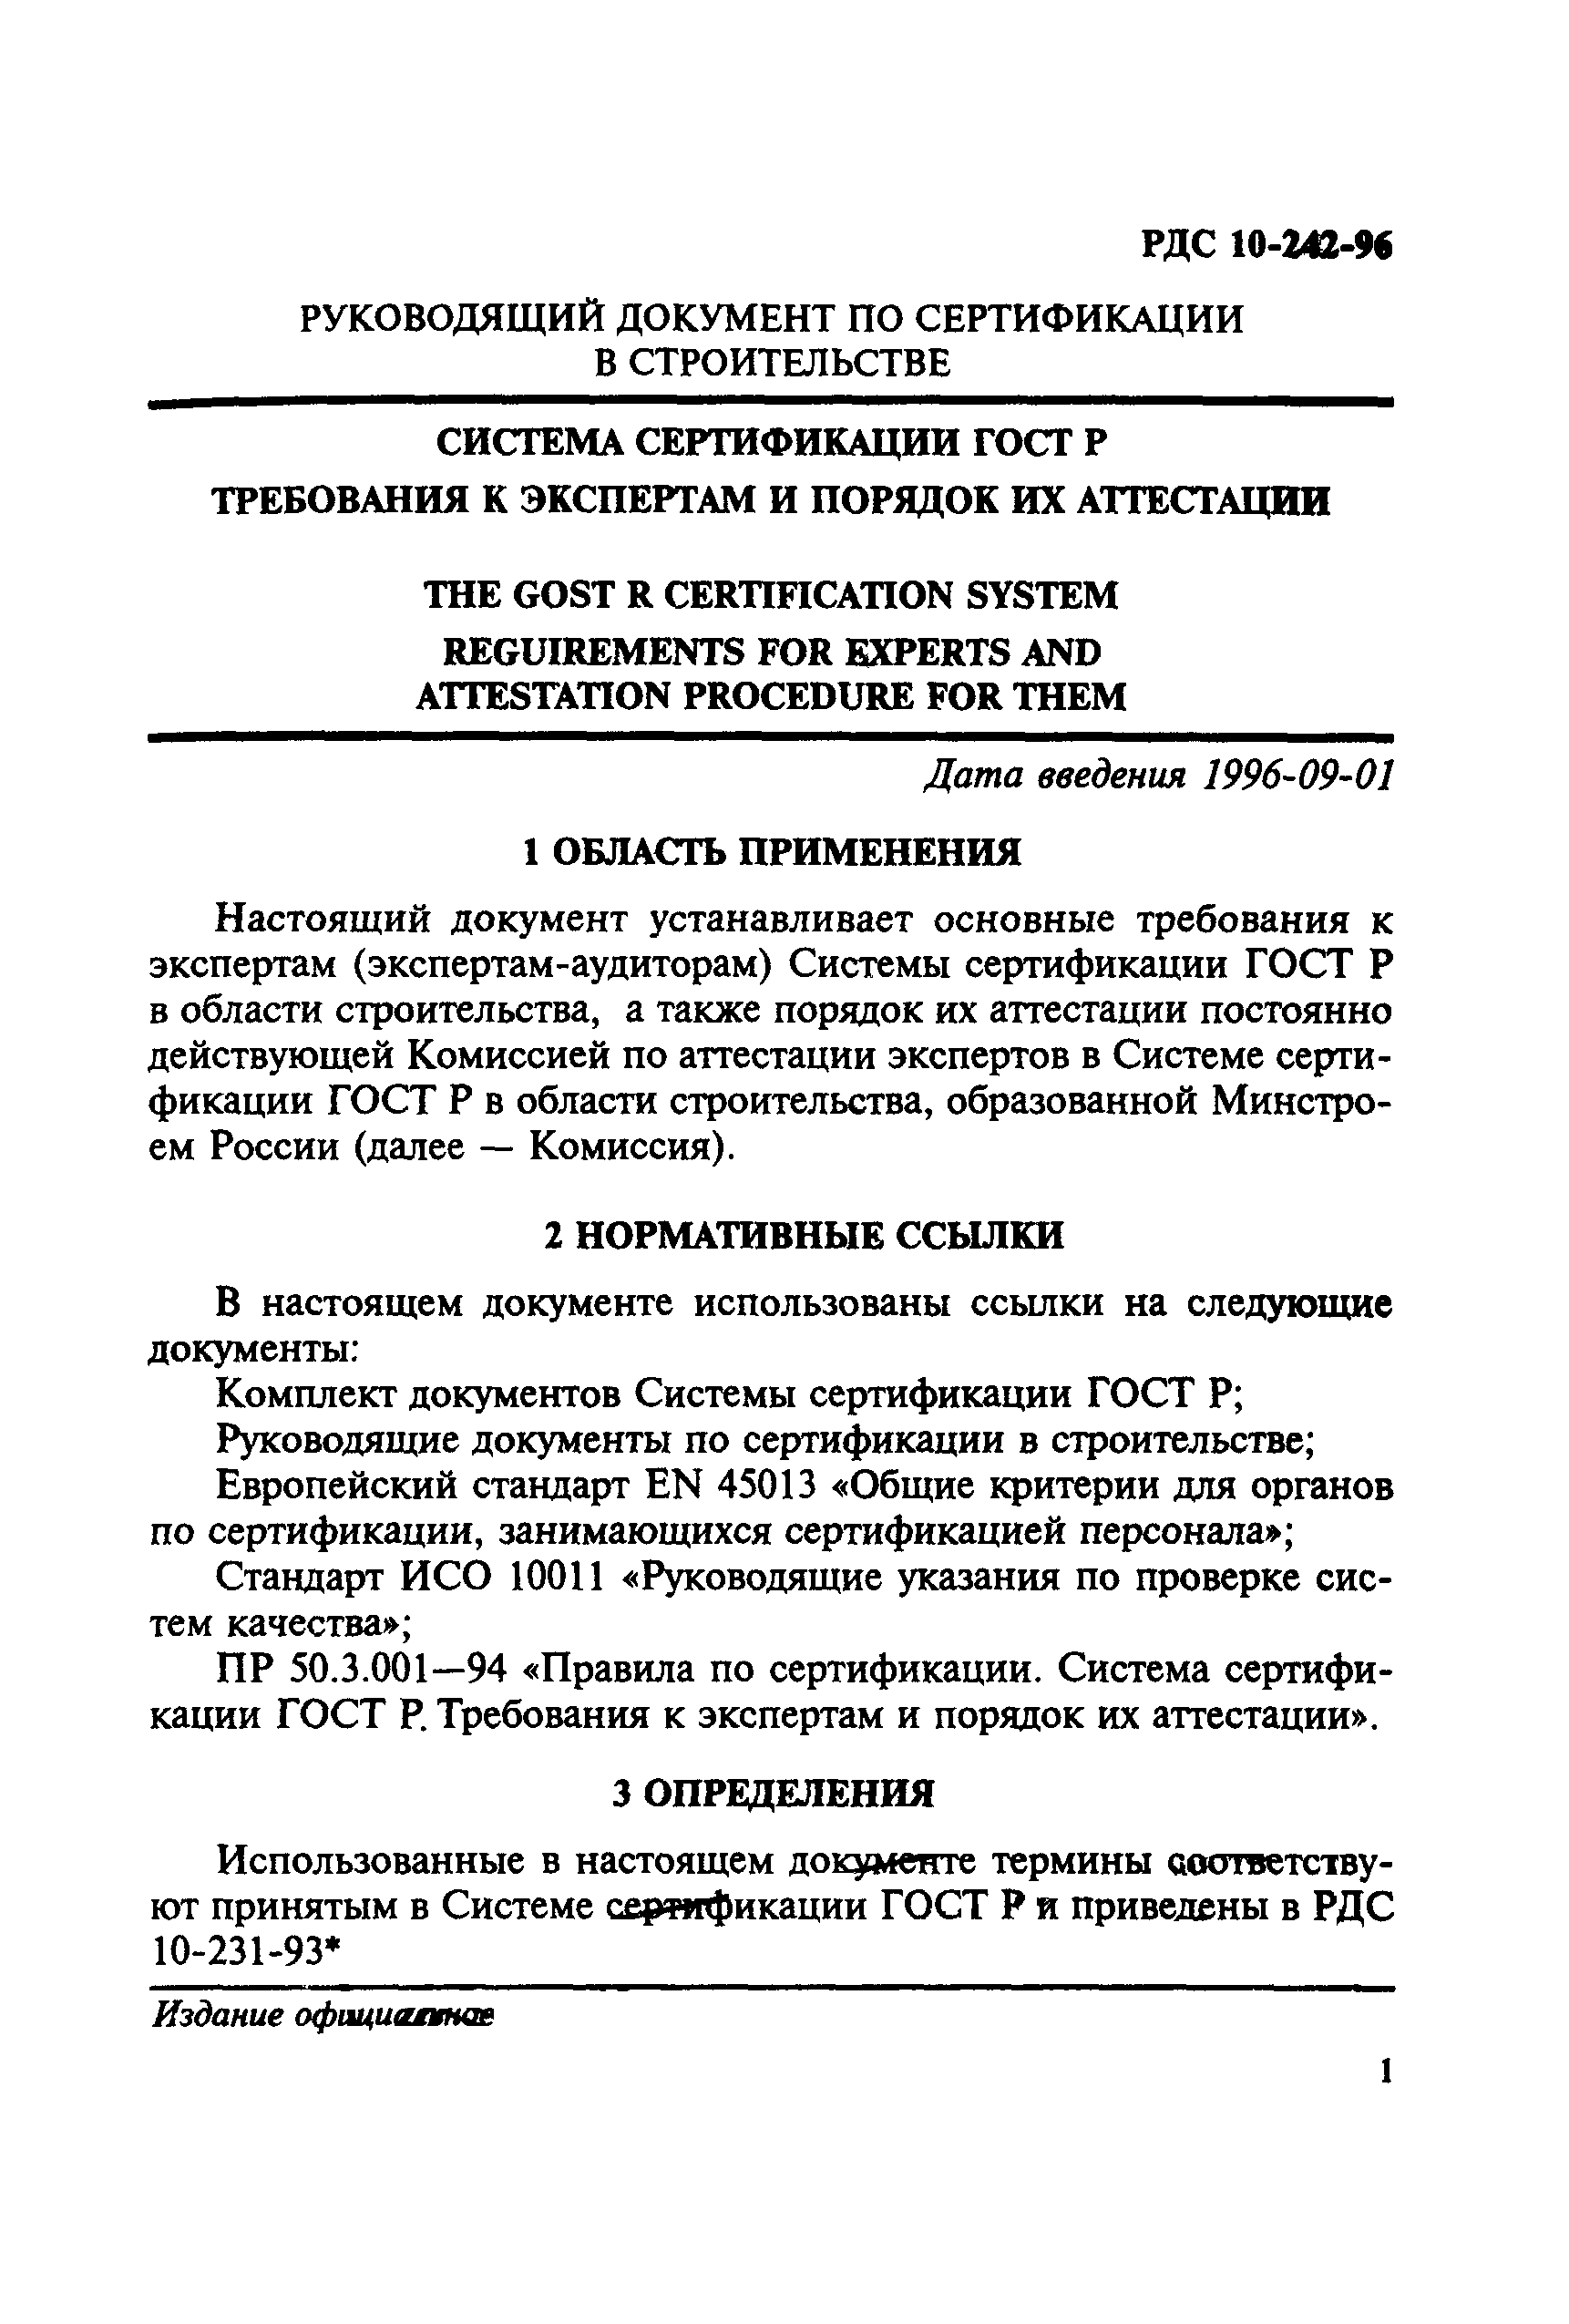 РДС 10-242-96